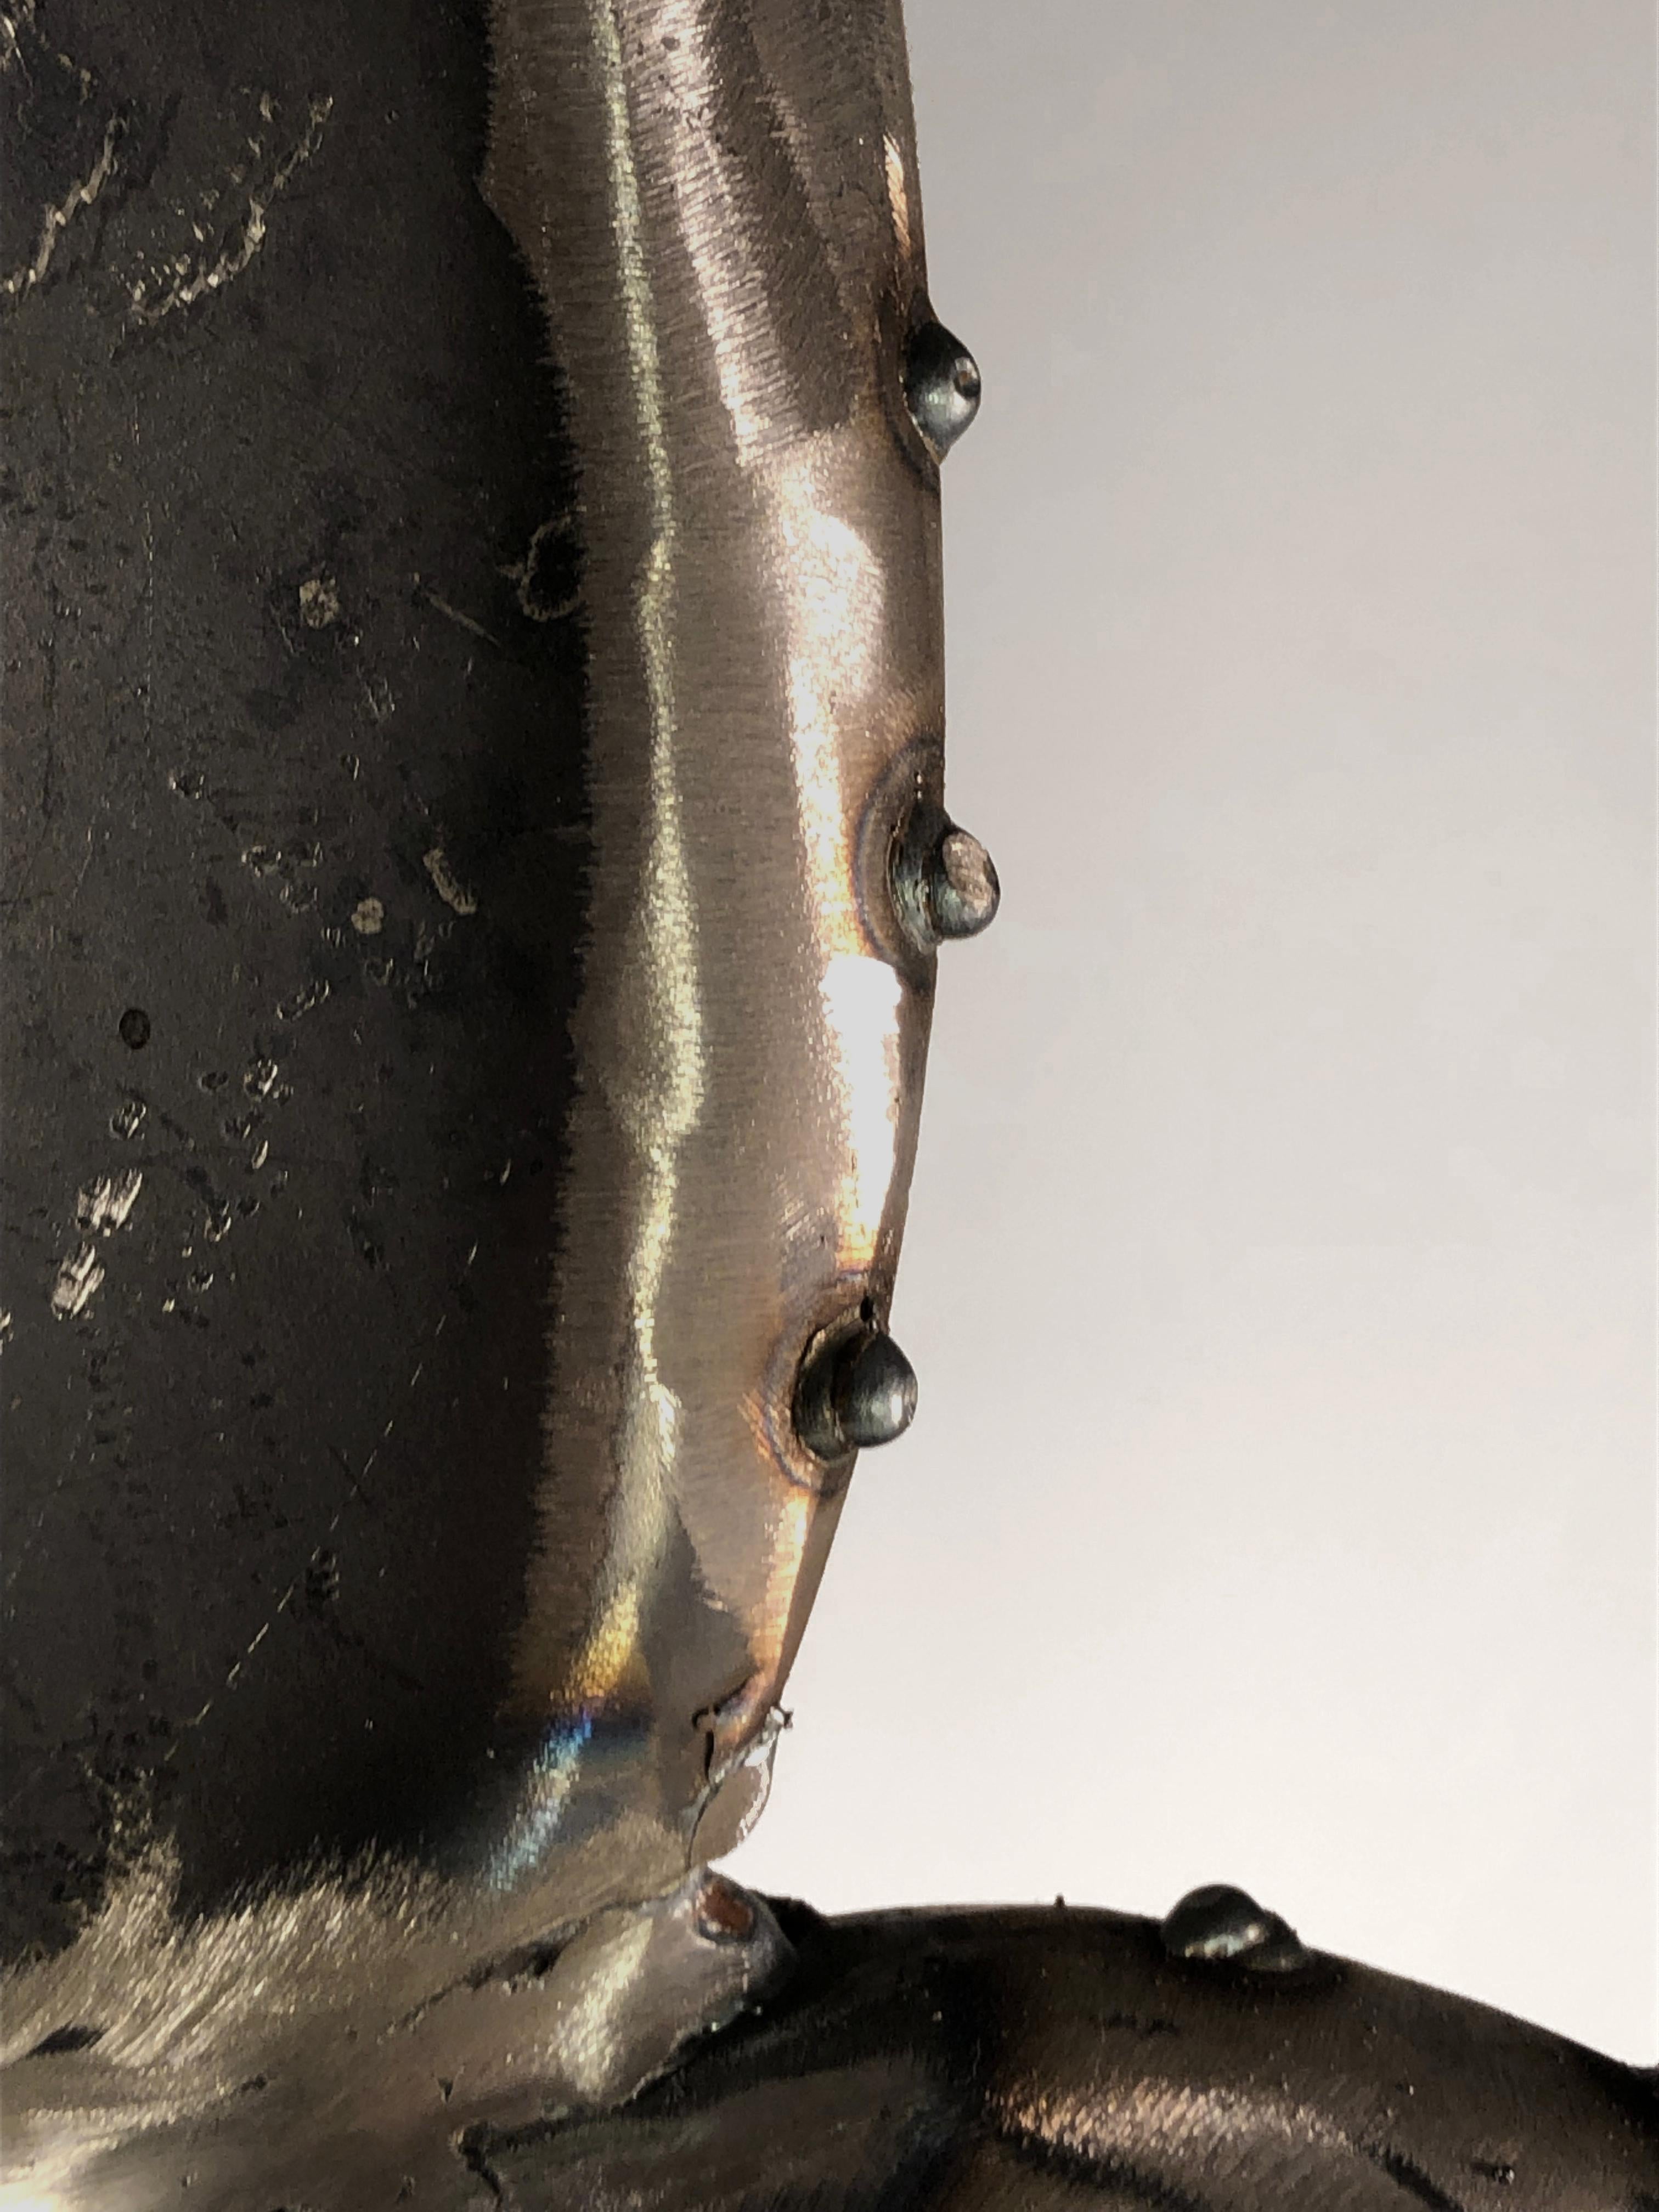 A Metal CACTUS Contemporary SCULPTURE BRUTALIST Unique PIECE by ESOJ France 2020 For Sale 3